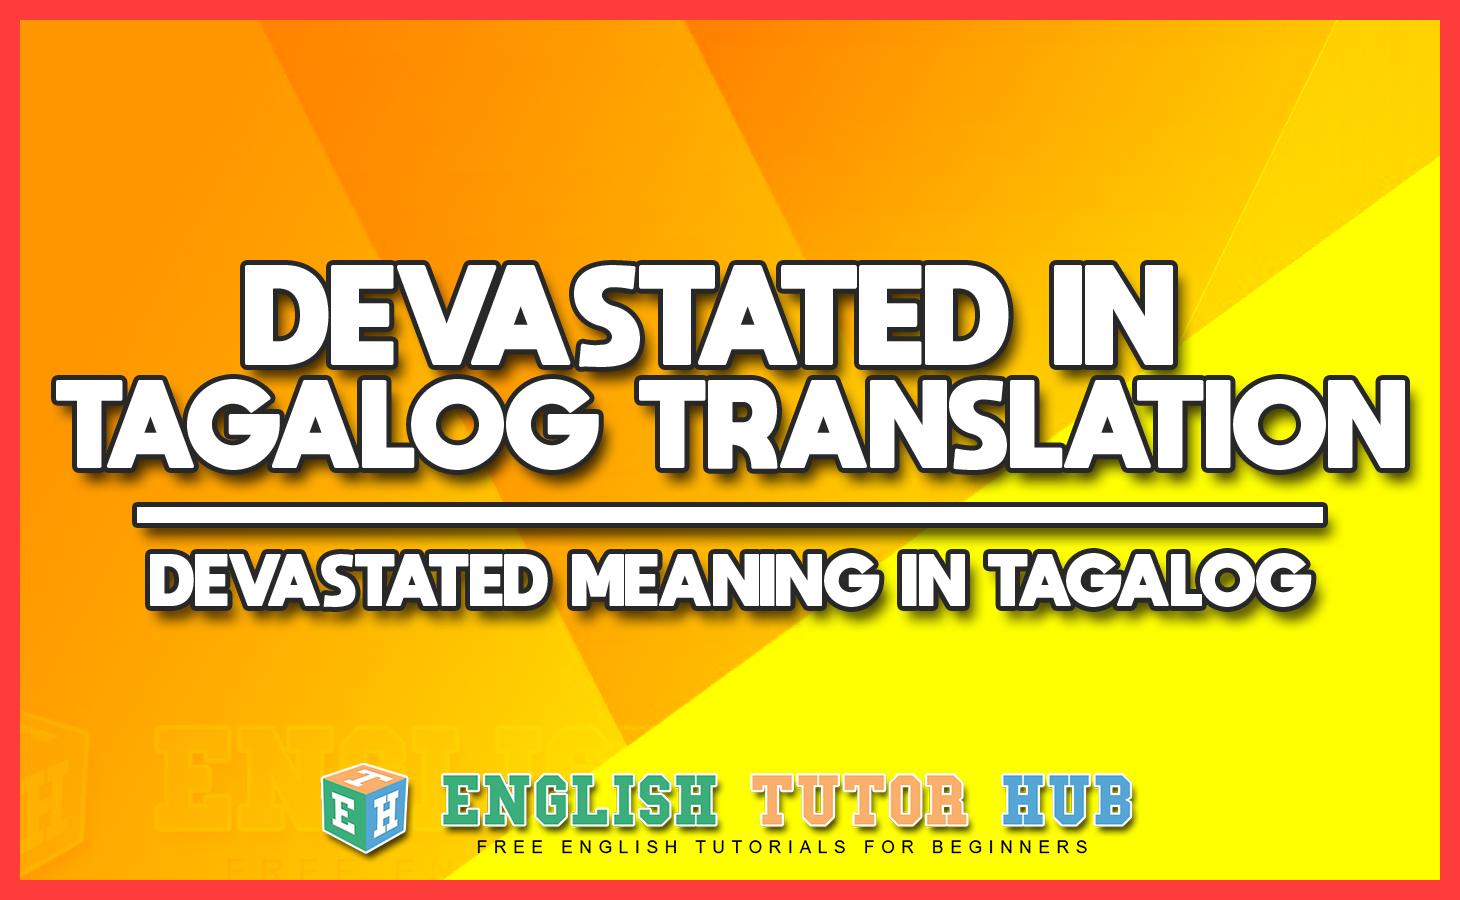 DEVASTATED IN TAGALOG TRANSLATION